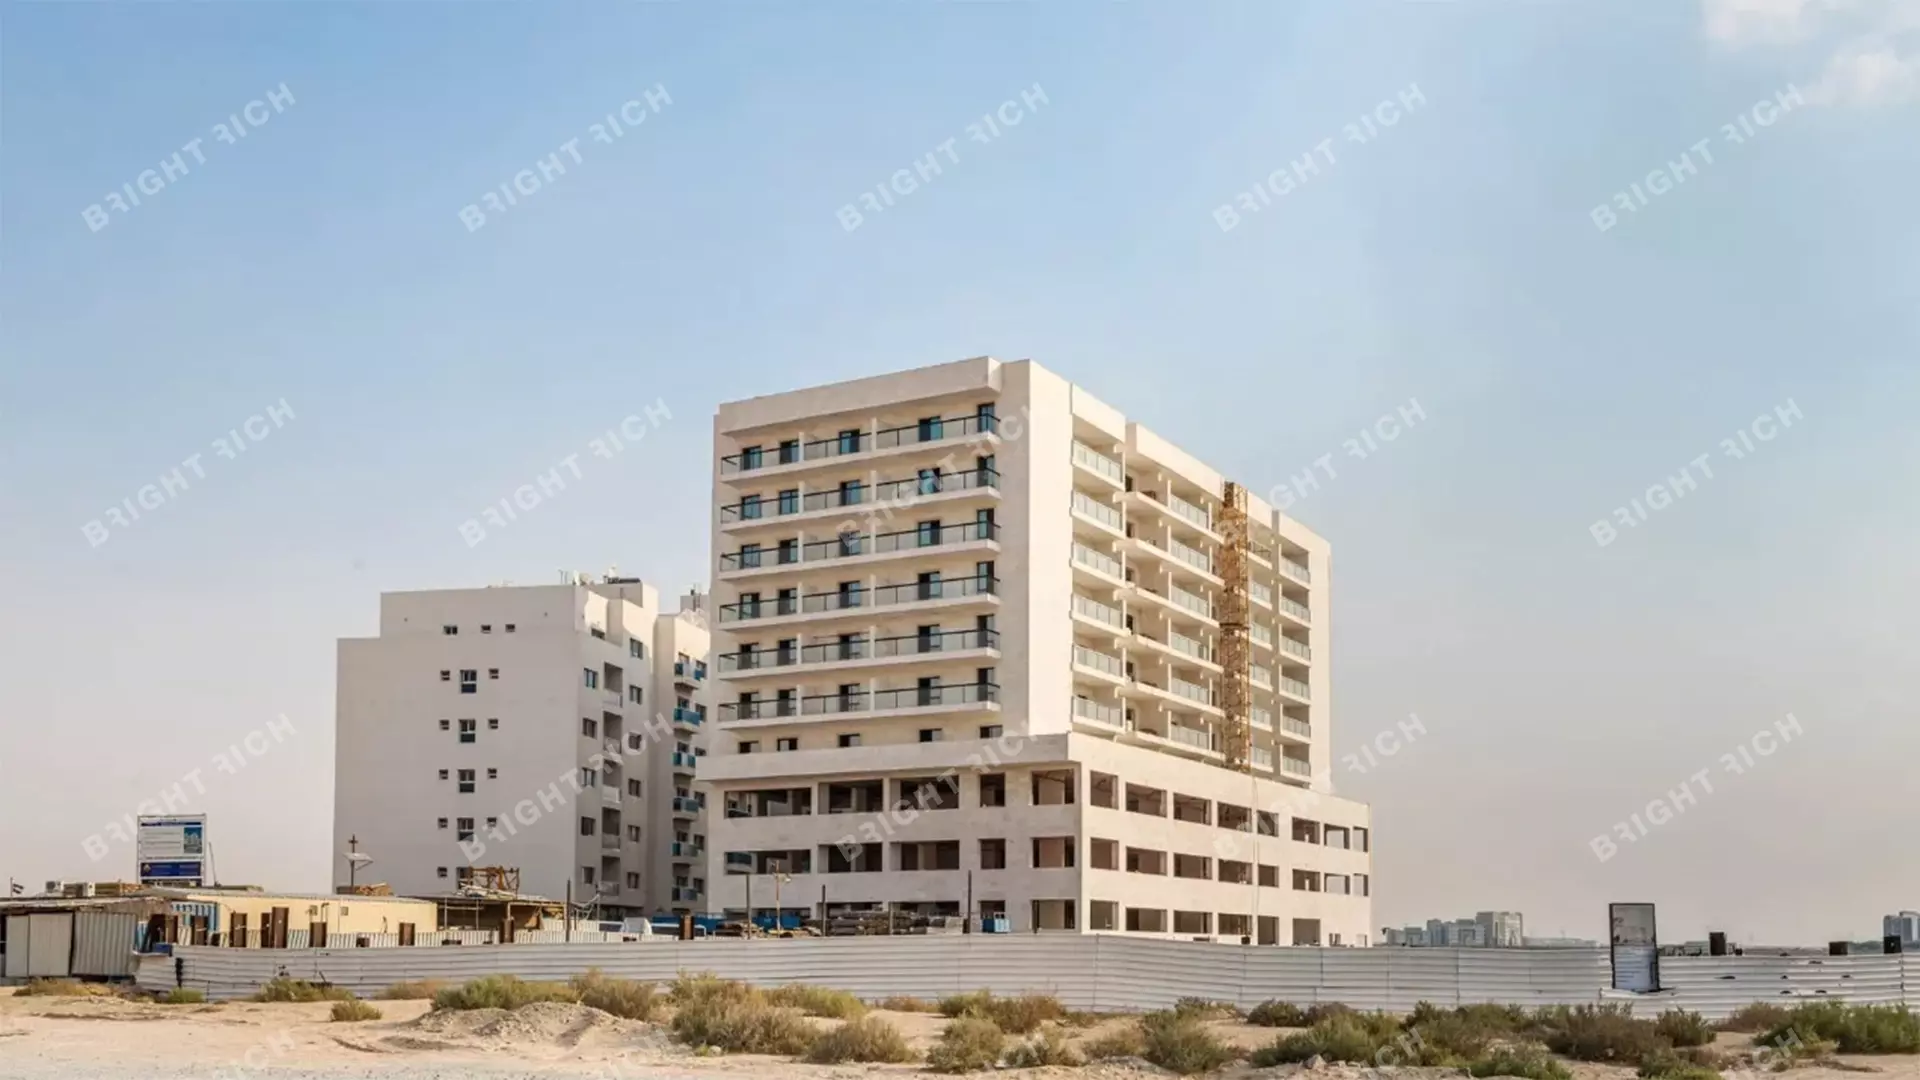 Equiti Apartments, apart complex in Dubai - 1